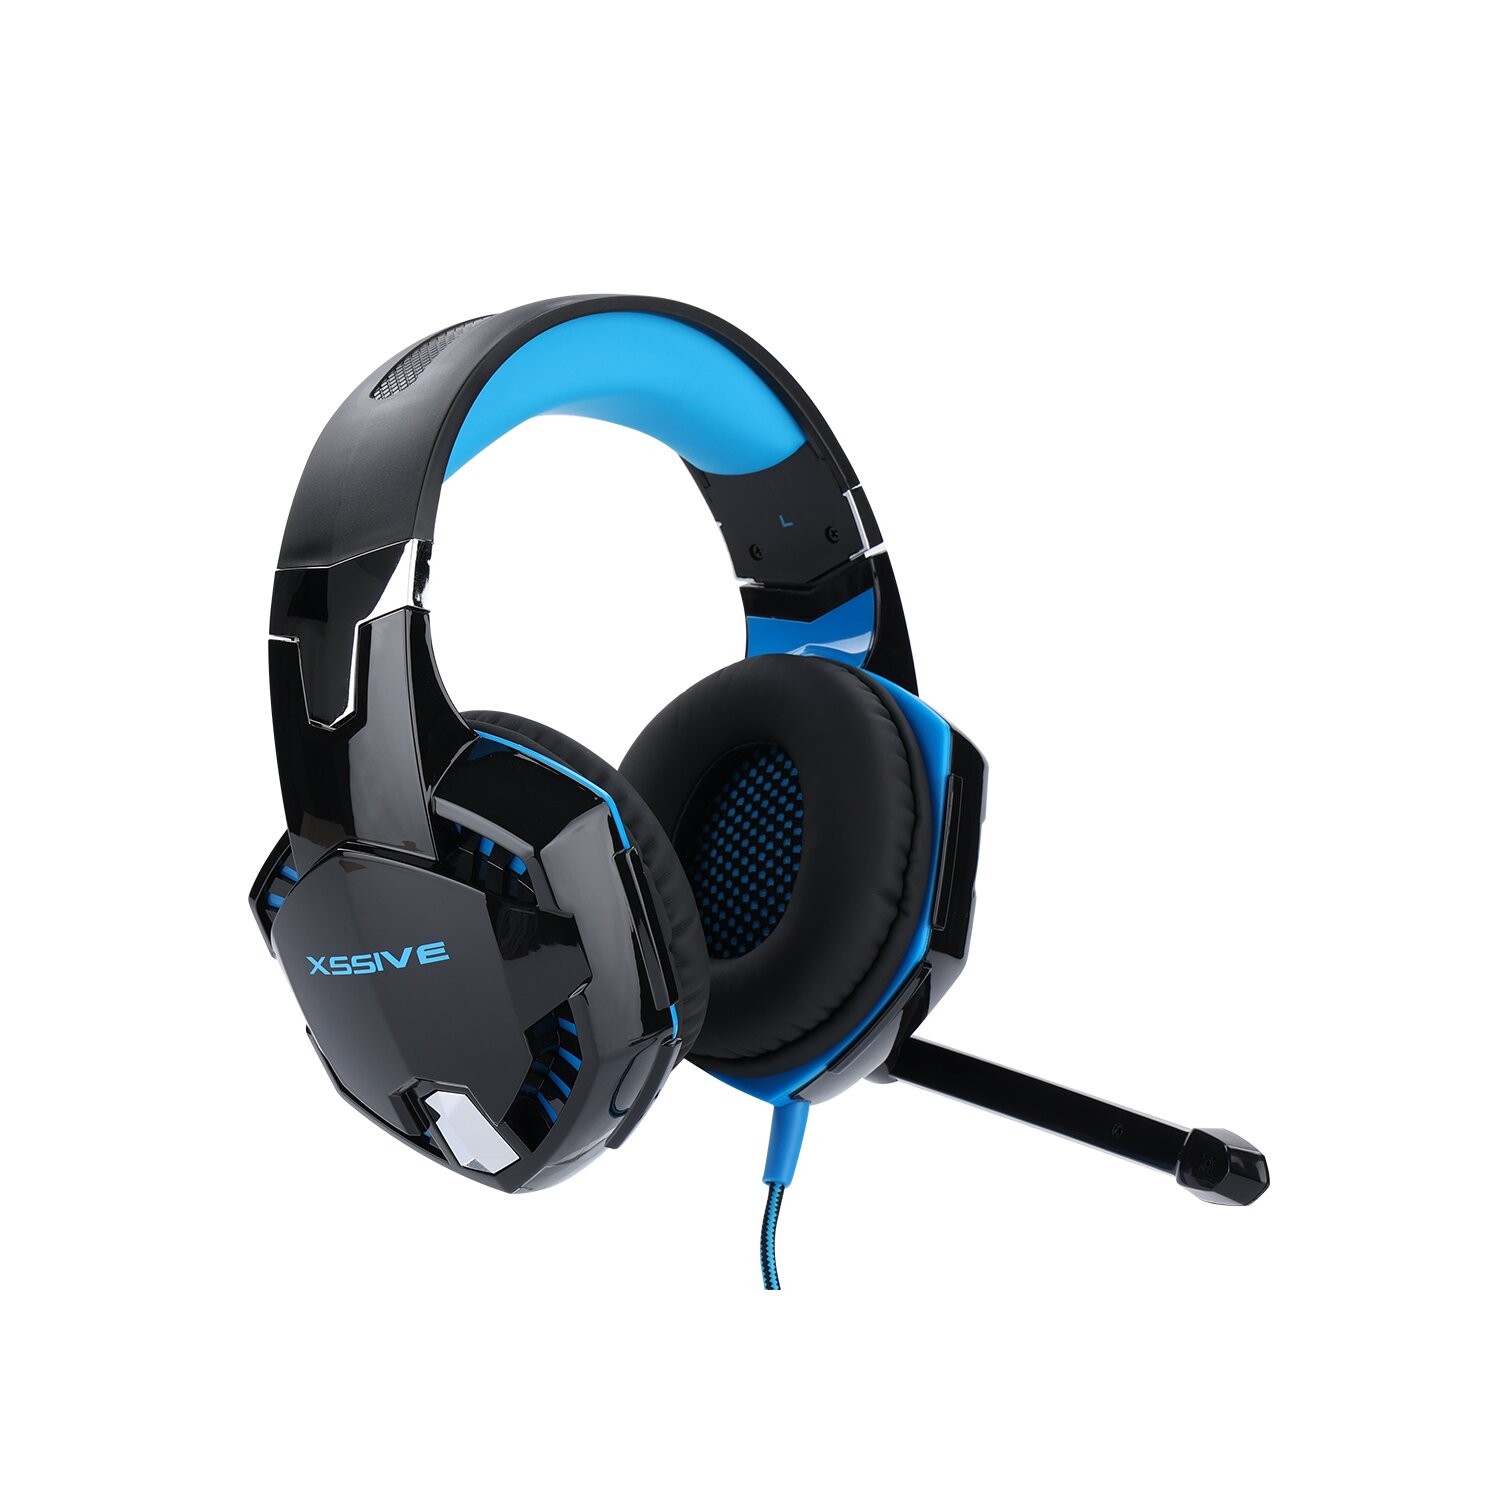 COFI GH1, Over-ear Gaming Headset Schwarz/Blau